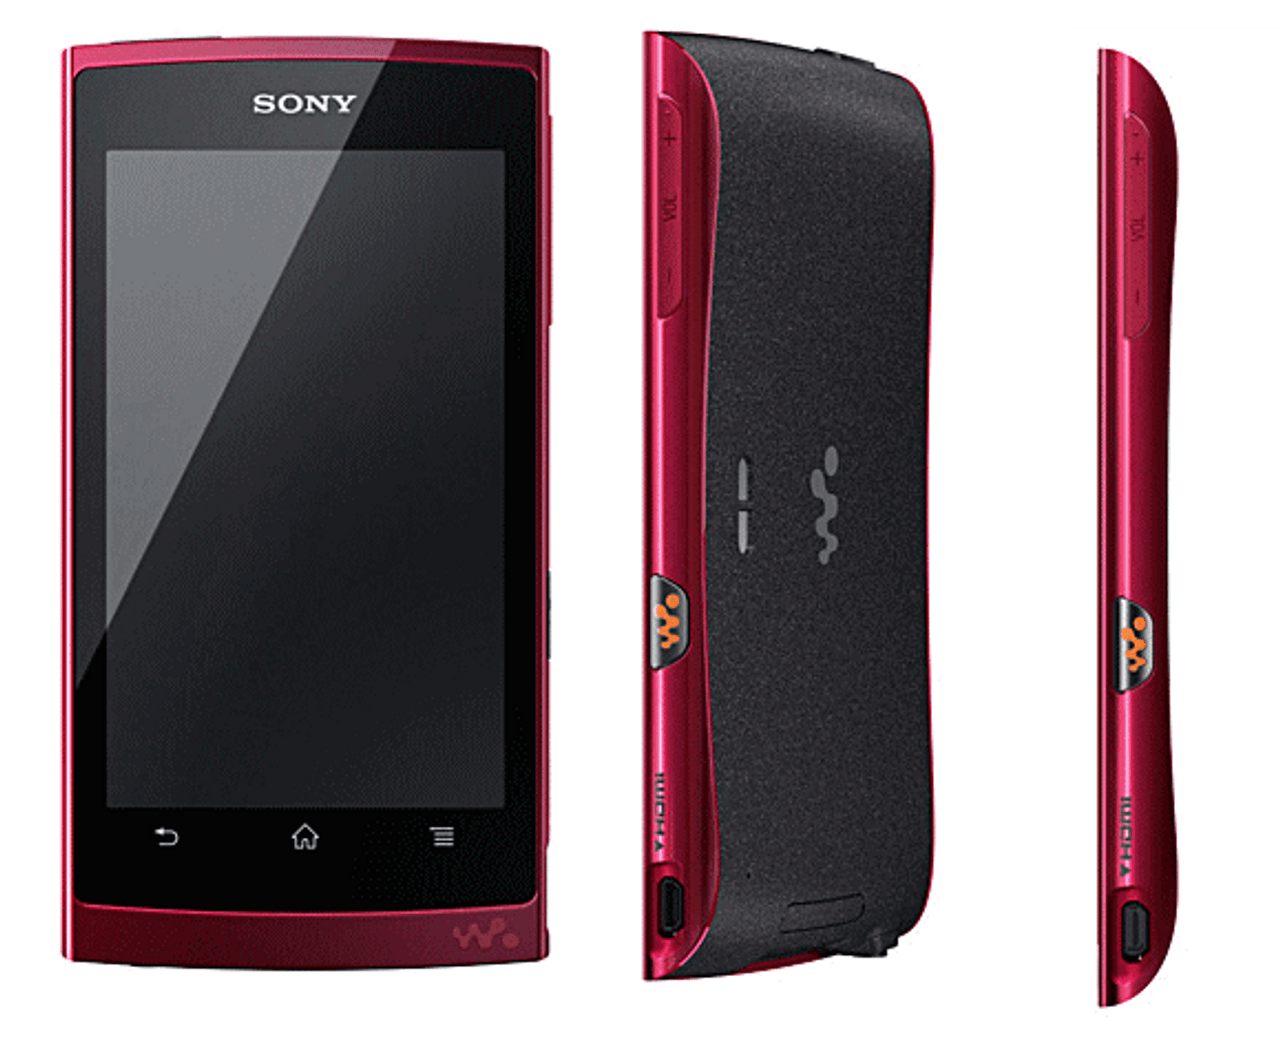 Sony Walkman Z-1000 Series 64GB NW-Z1070 Android 2.3